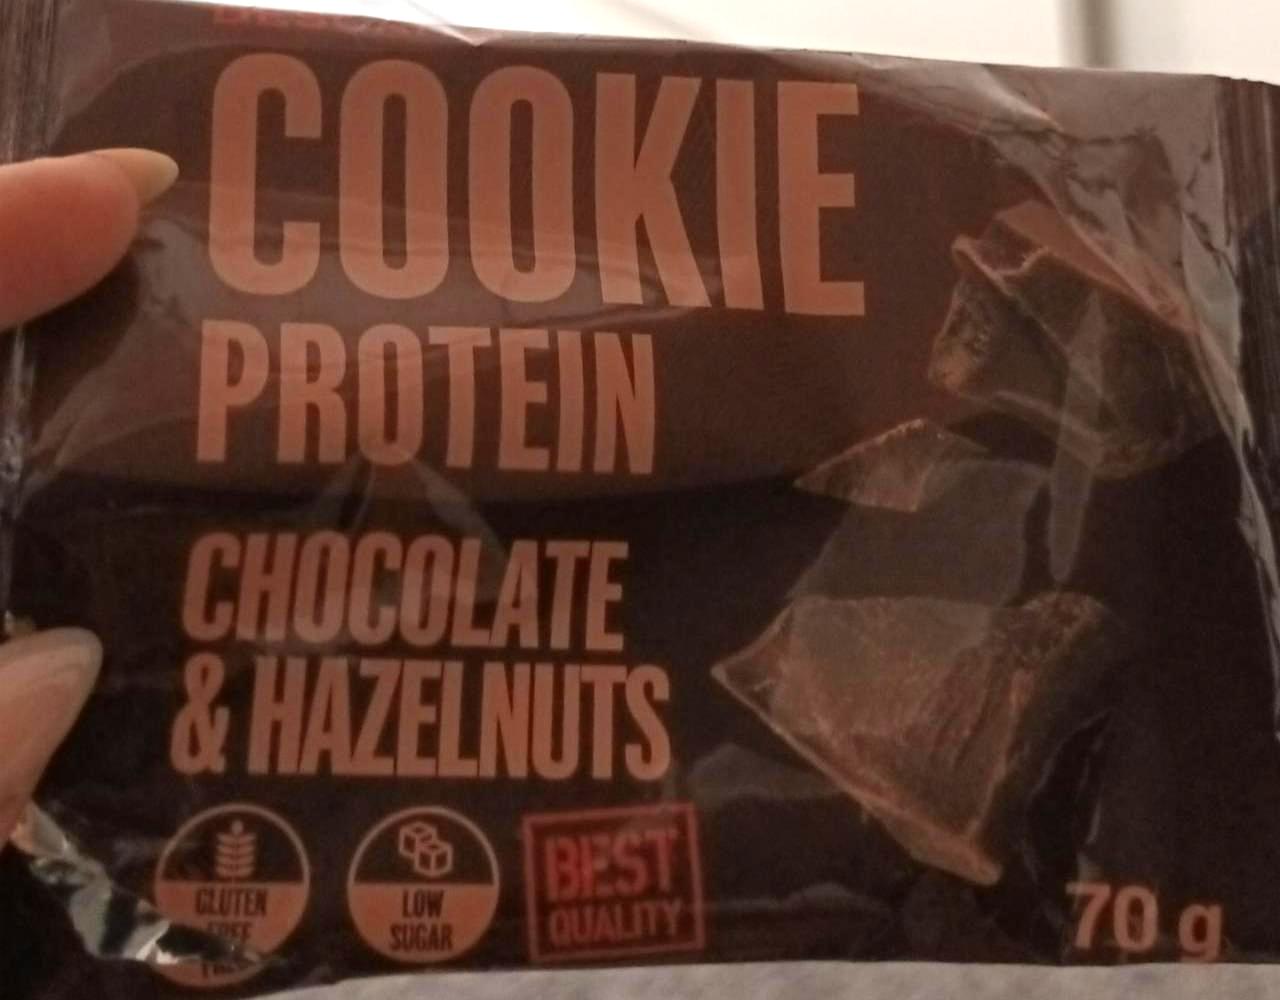 Fotografie - Cookie protein chocolate & hazelnuts Descanti